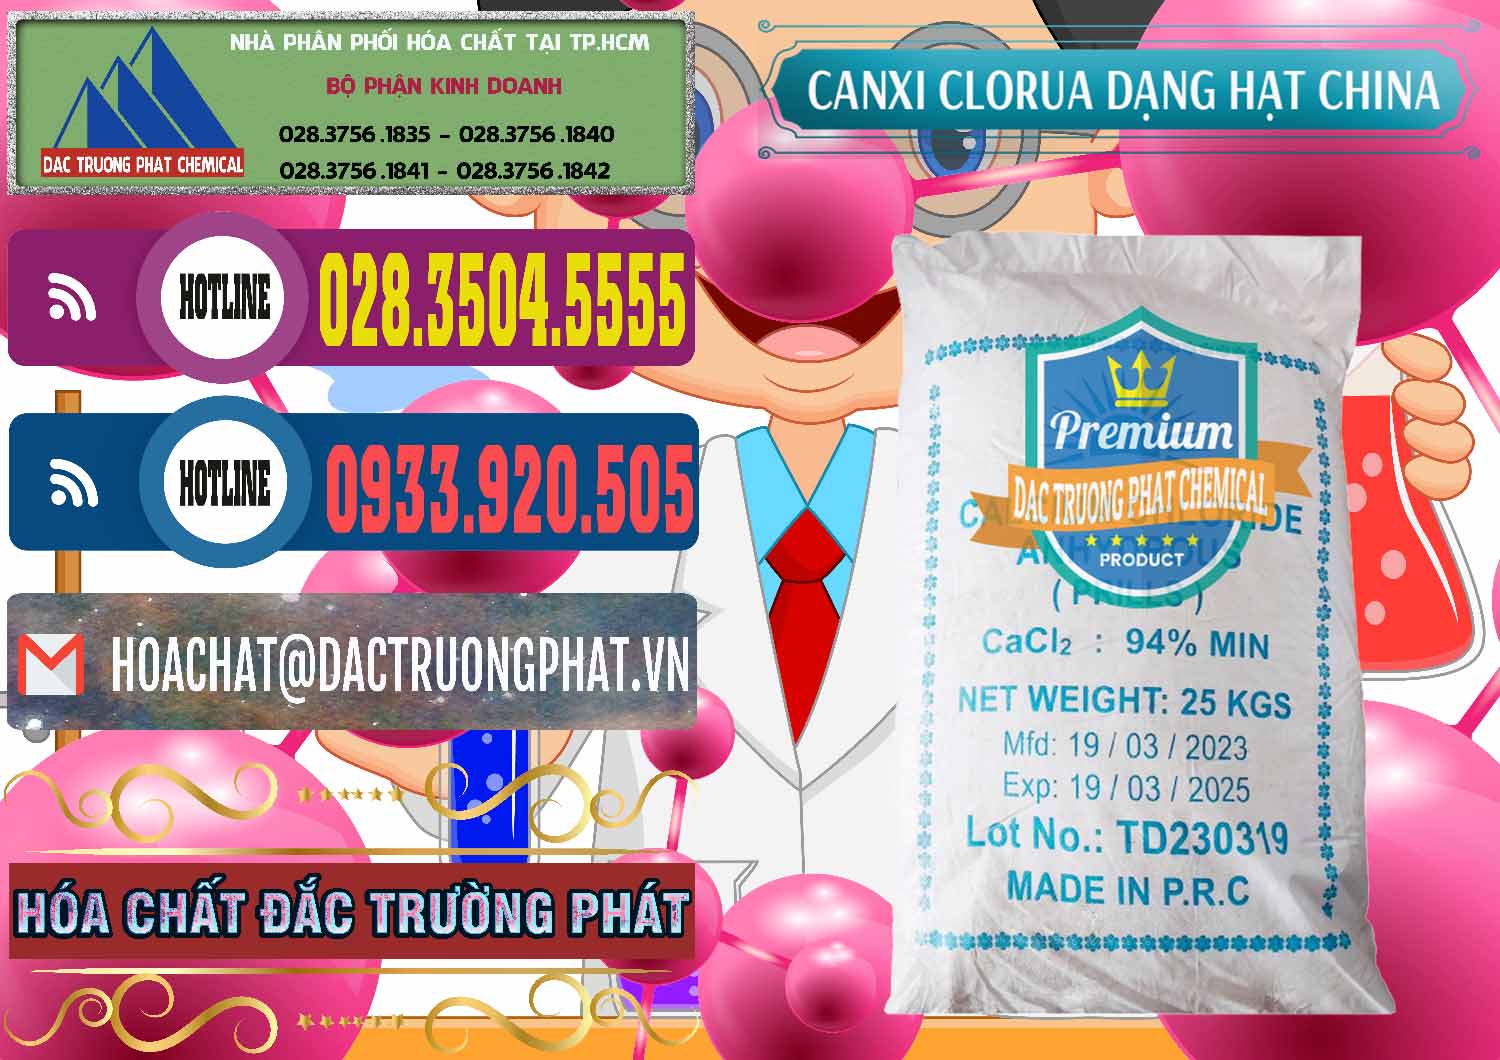 Đơn vị kinh doanh và bán CaCl2 – Canxi Clorua 94% Dạng Hạt Trung Quốc China - 0373 - Chuyên bán _ phân phối hóa chất tại TP.HCM - muabanhoachat.com.vn